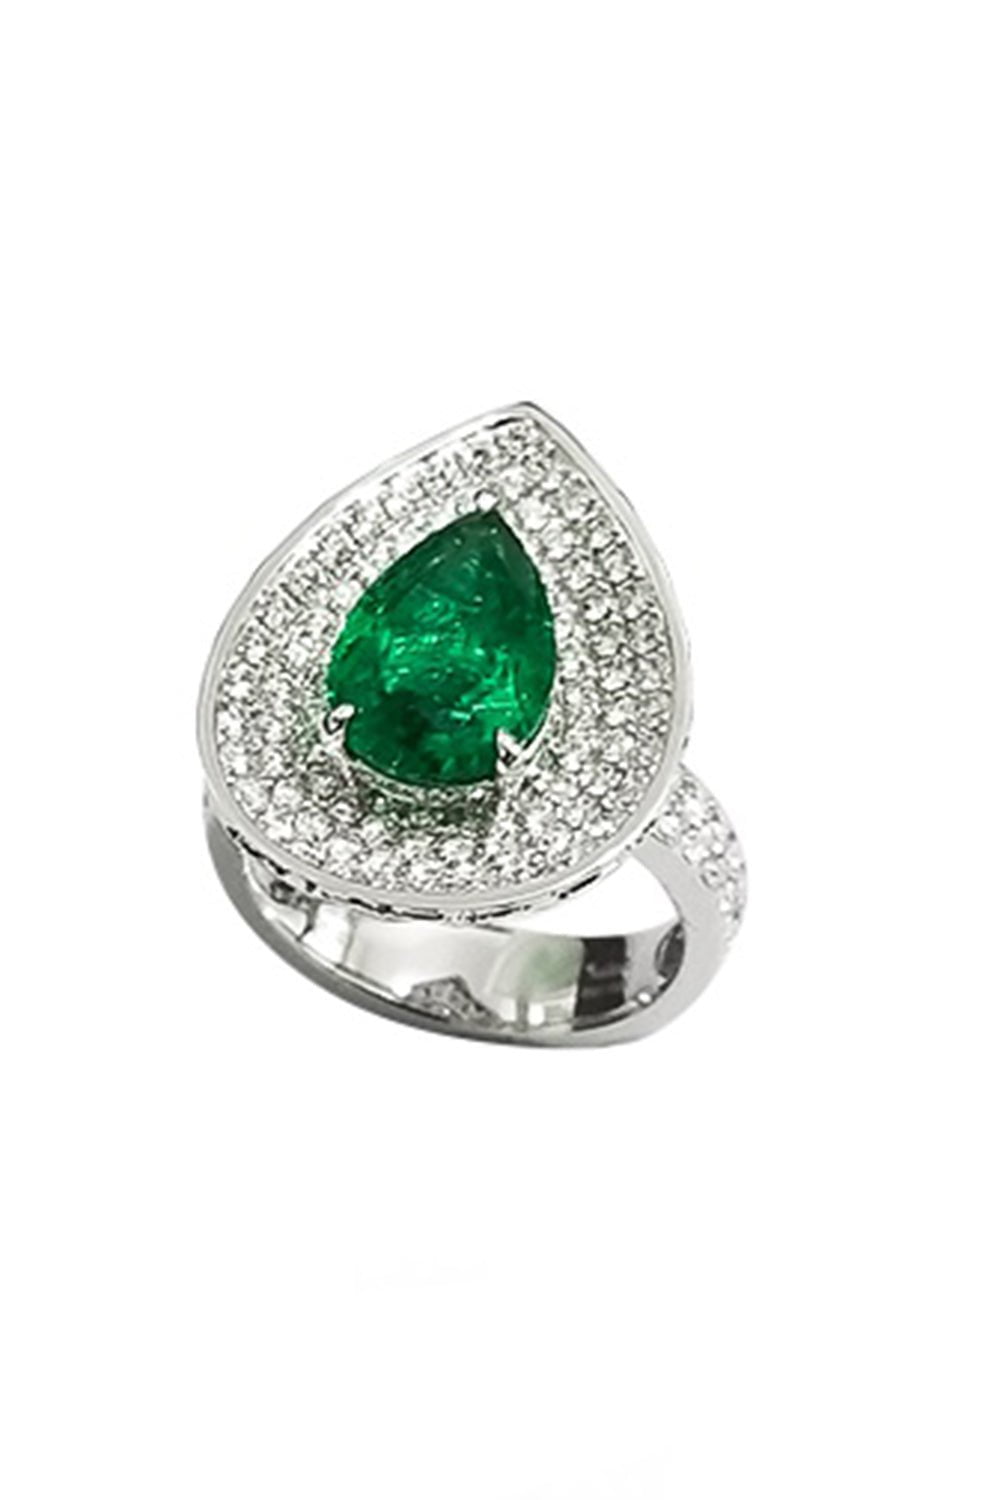 Emerald Diamond Ring JEWELRYFINE JEWELRING SABOO FINE JEWELS   